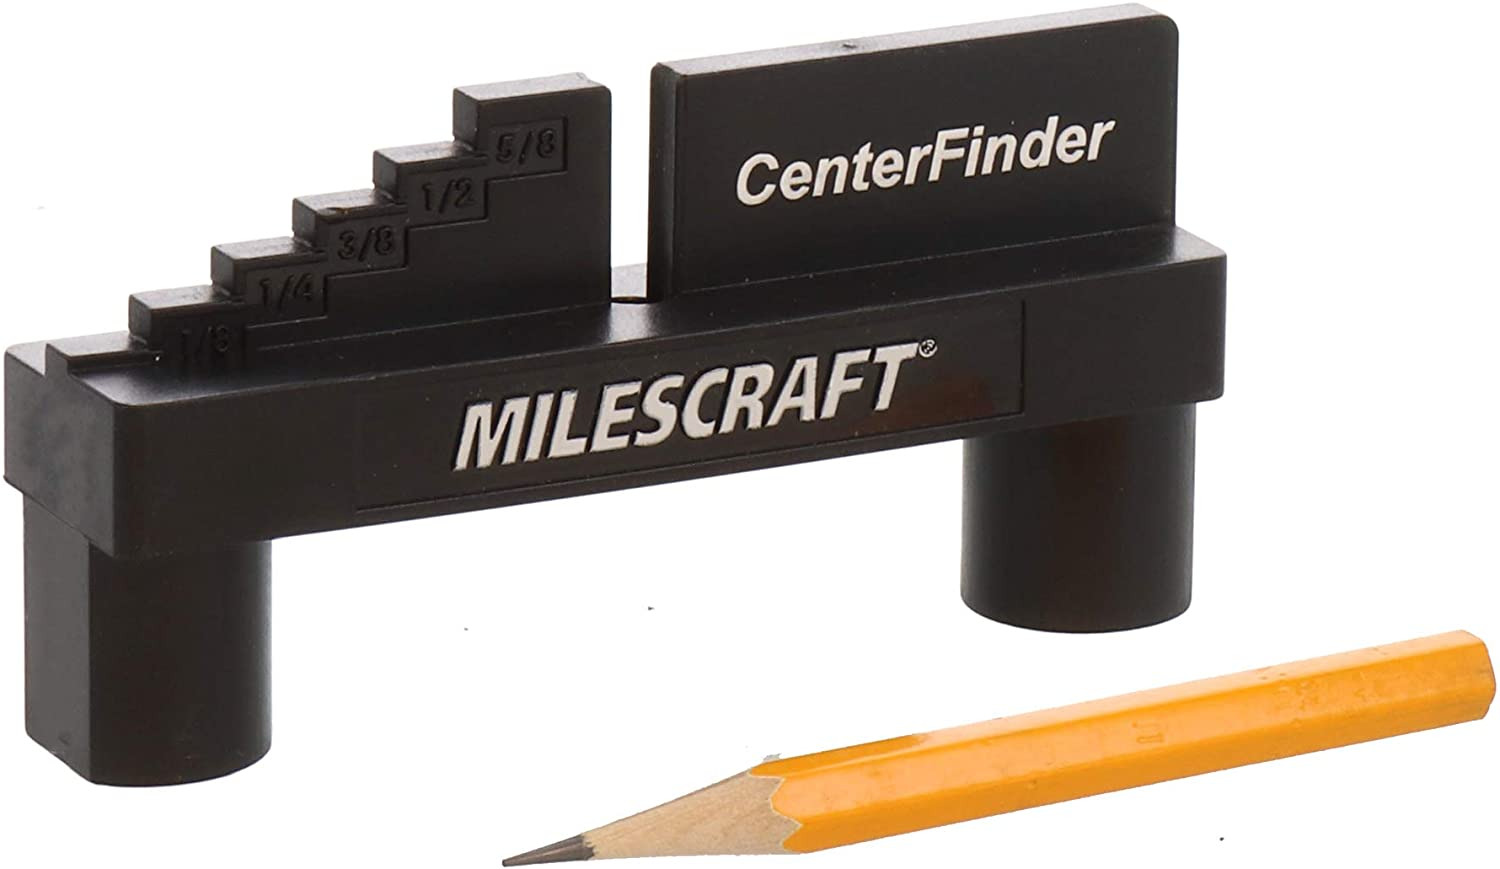 8408 Center Finder - Center Scriber and Offset Measuring & Marking Tool for Wood